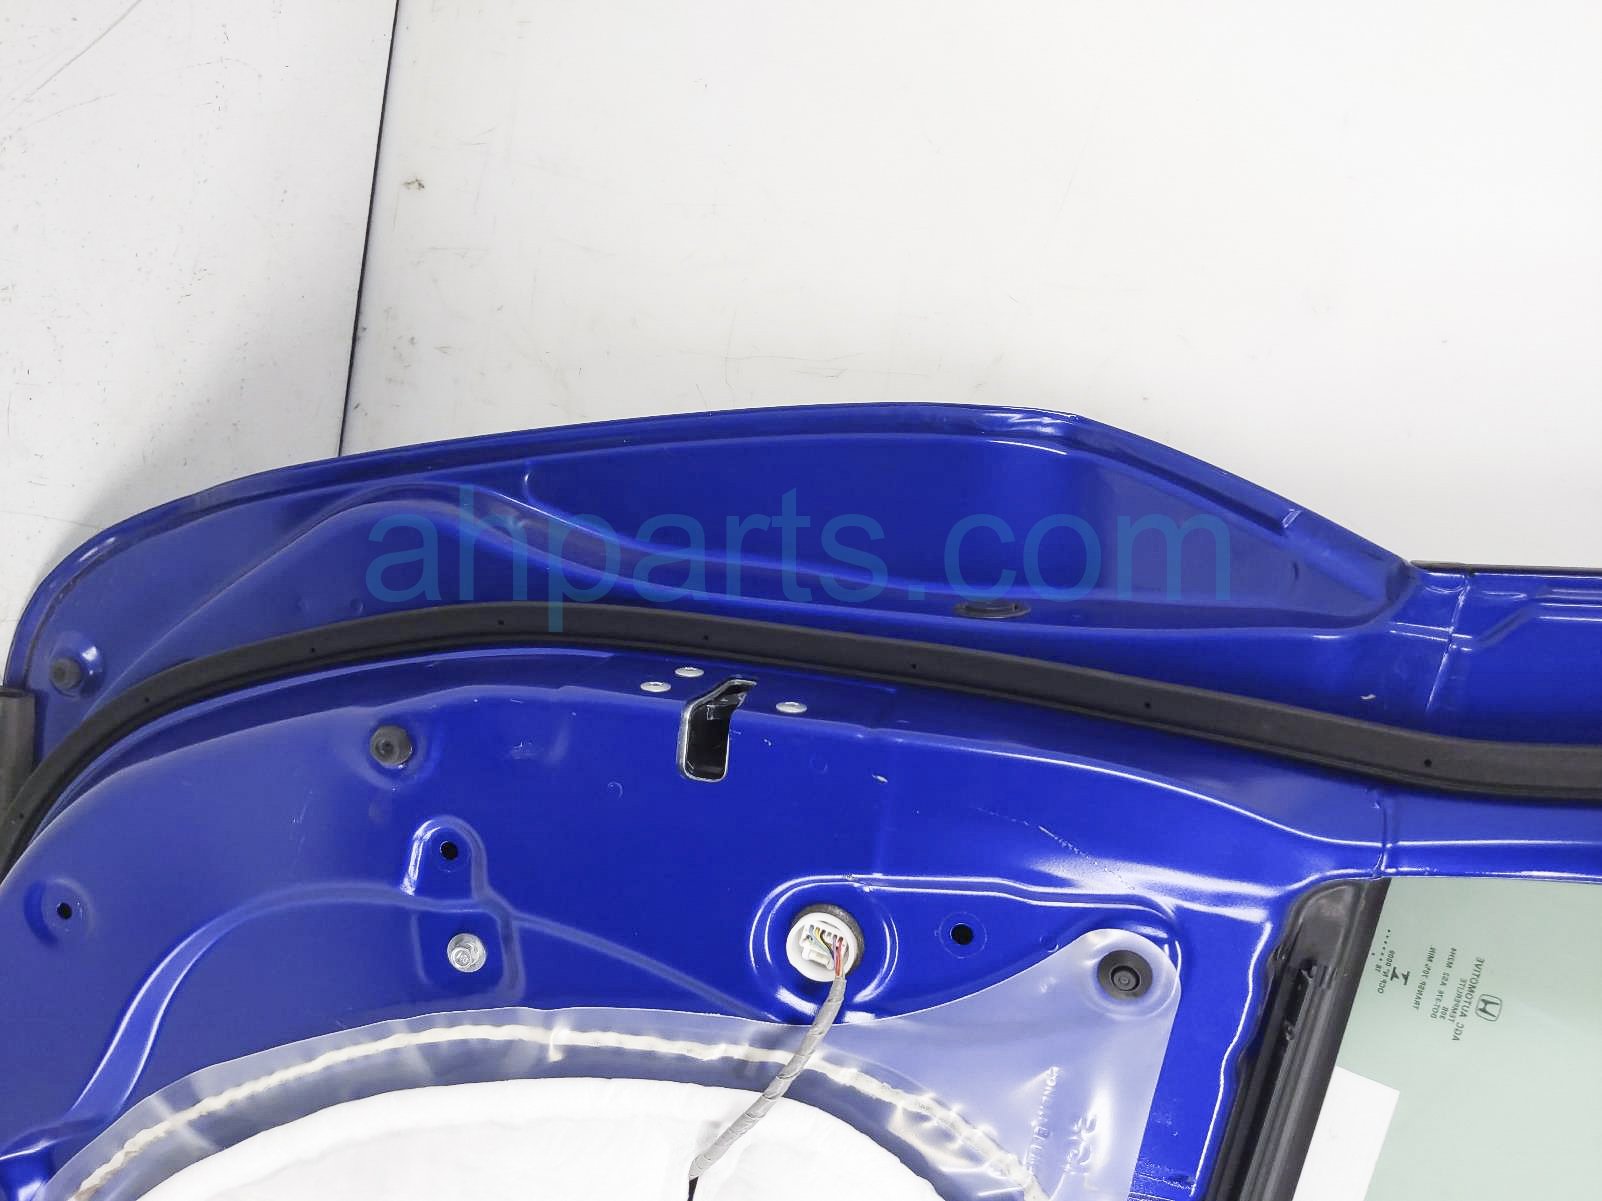 Sold 2018 Honda Civic Front Driver Door - Blue - No Mirror/trim 67050 -TBG-A00ZZ